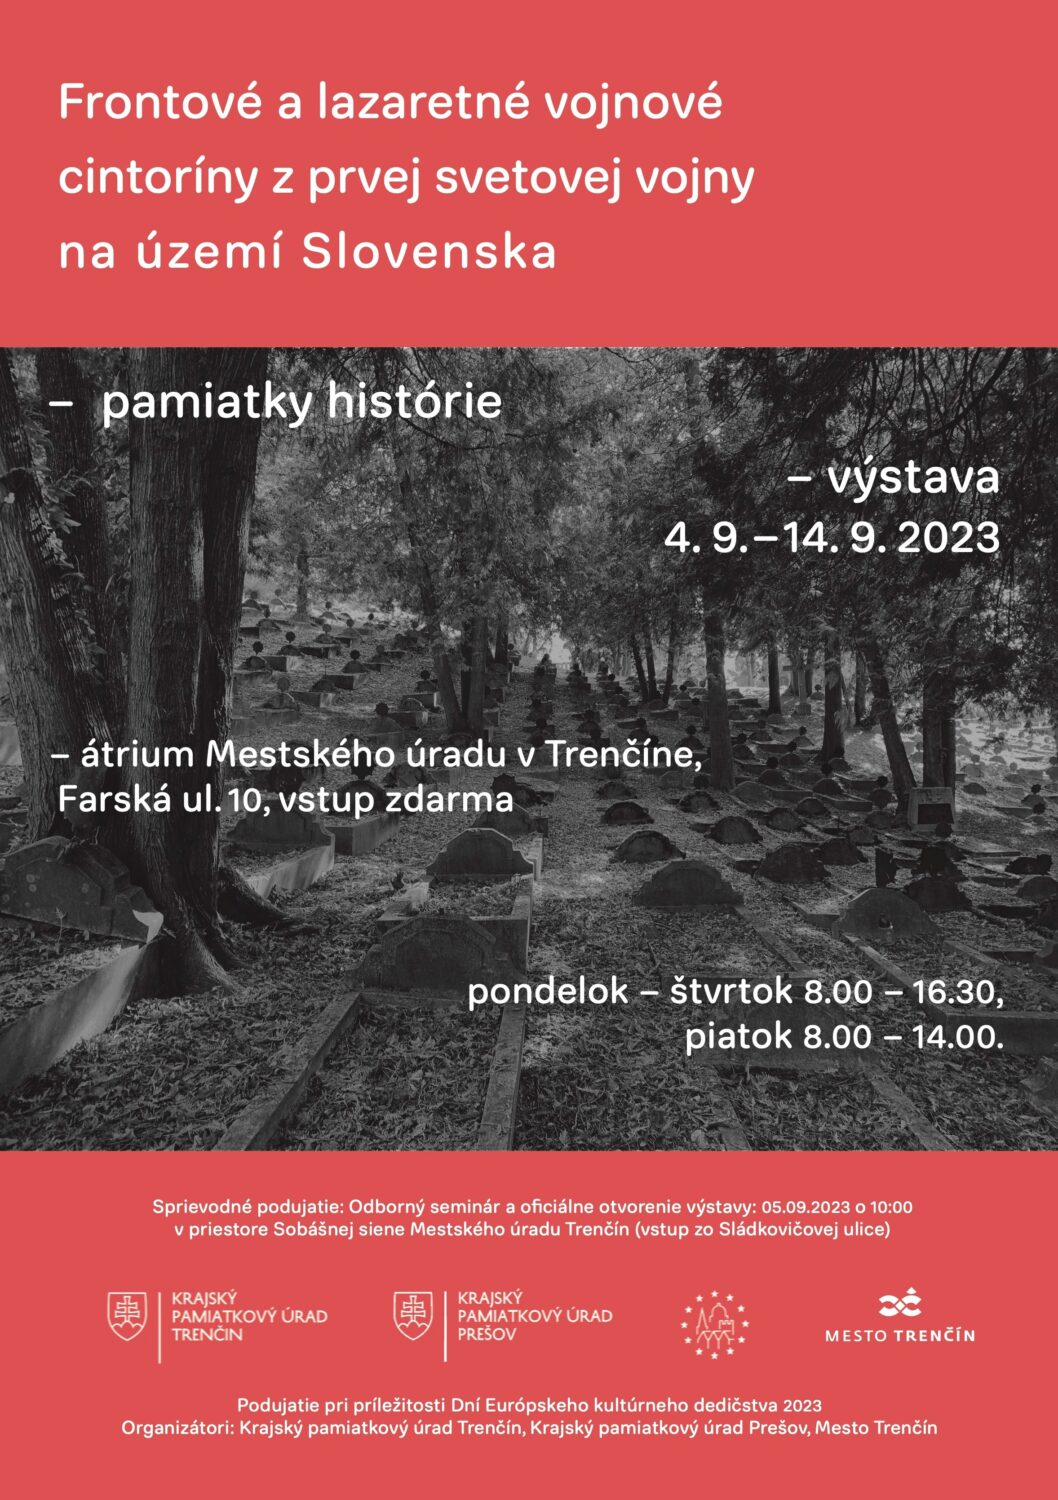 Vojnové hroby, seminár a výstava v Trenčíne